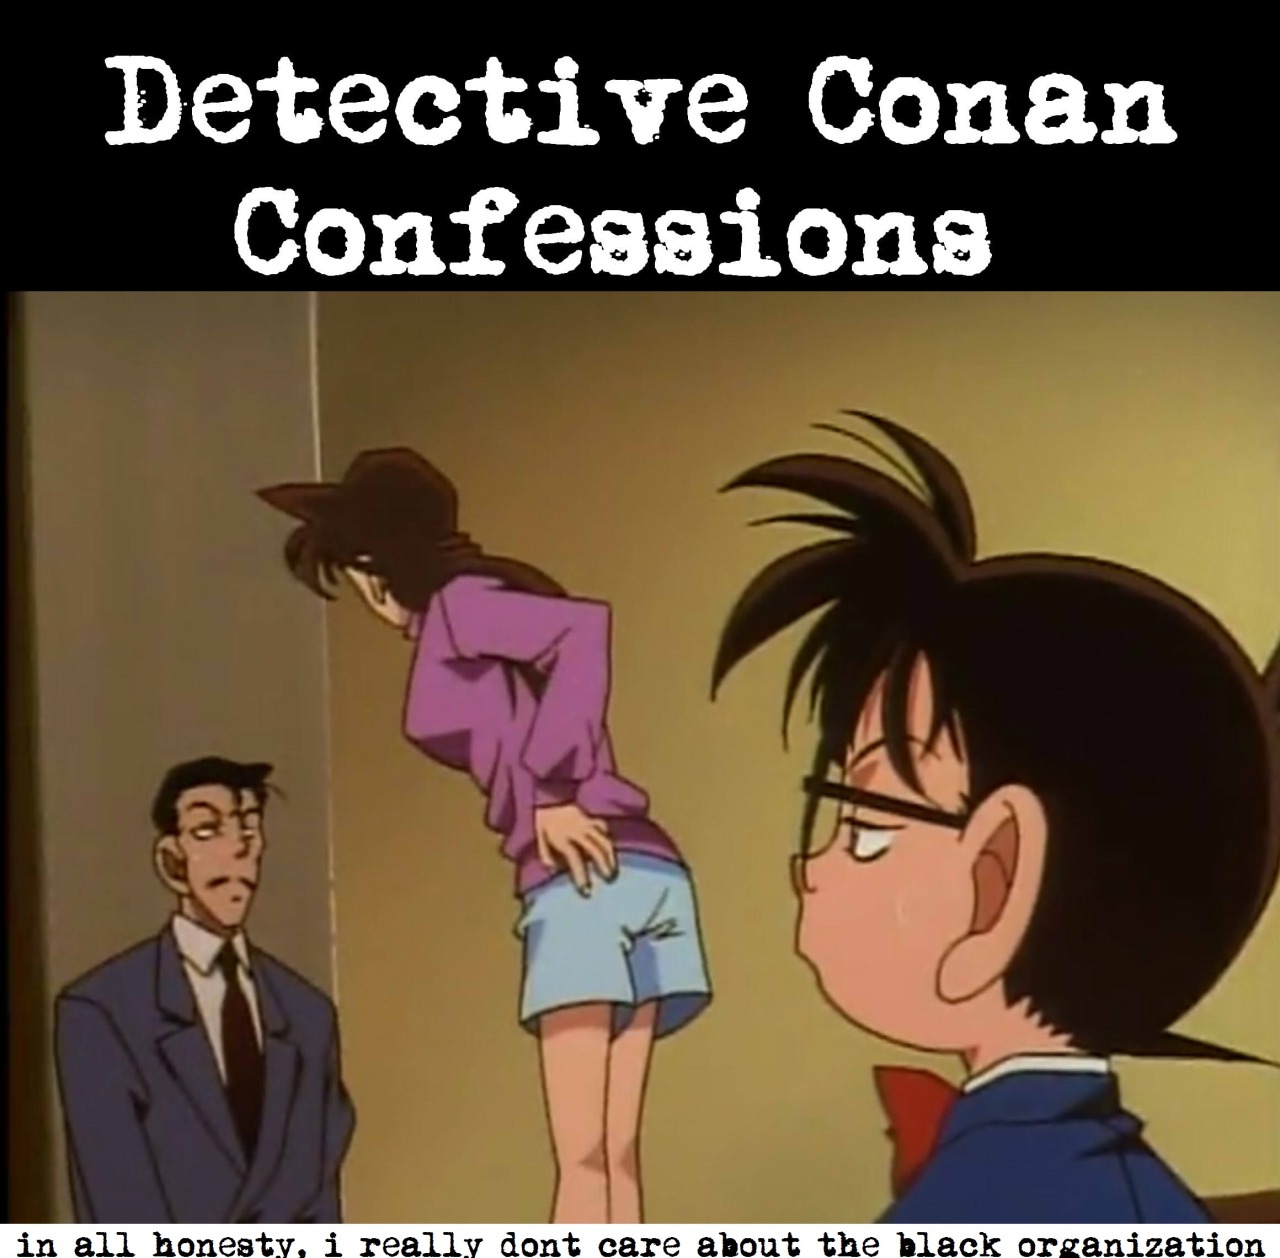 Detective conan ran ass